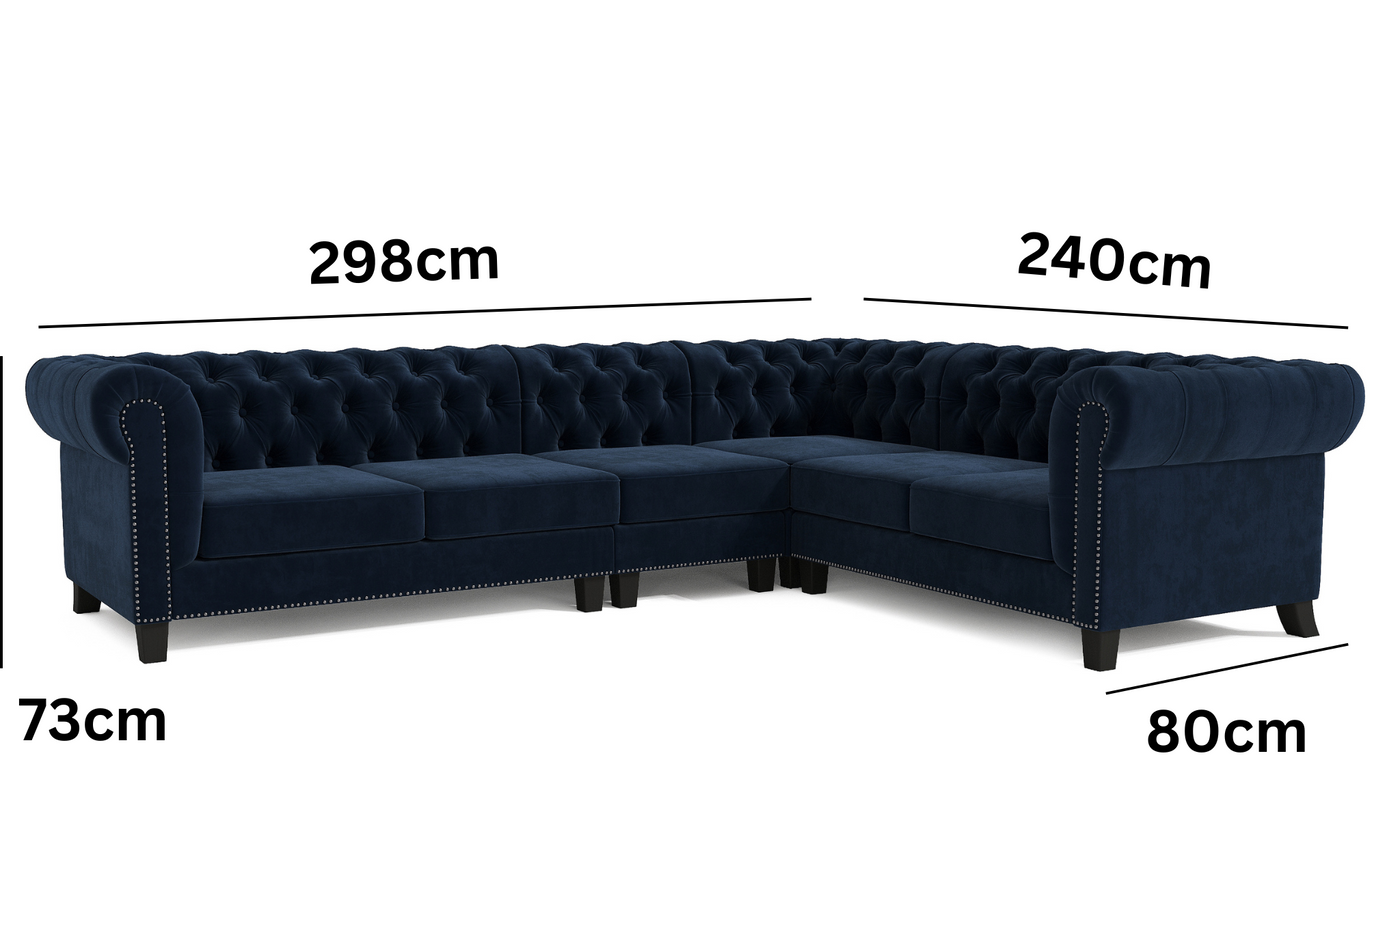 Paris 6 Seater Chesterfield Corner Sofa (Navy Blue Velvet) (7940481810686)